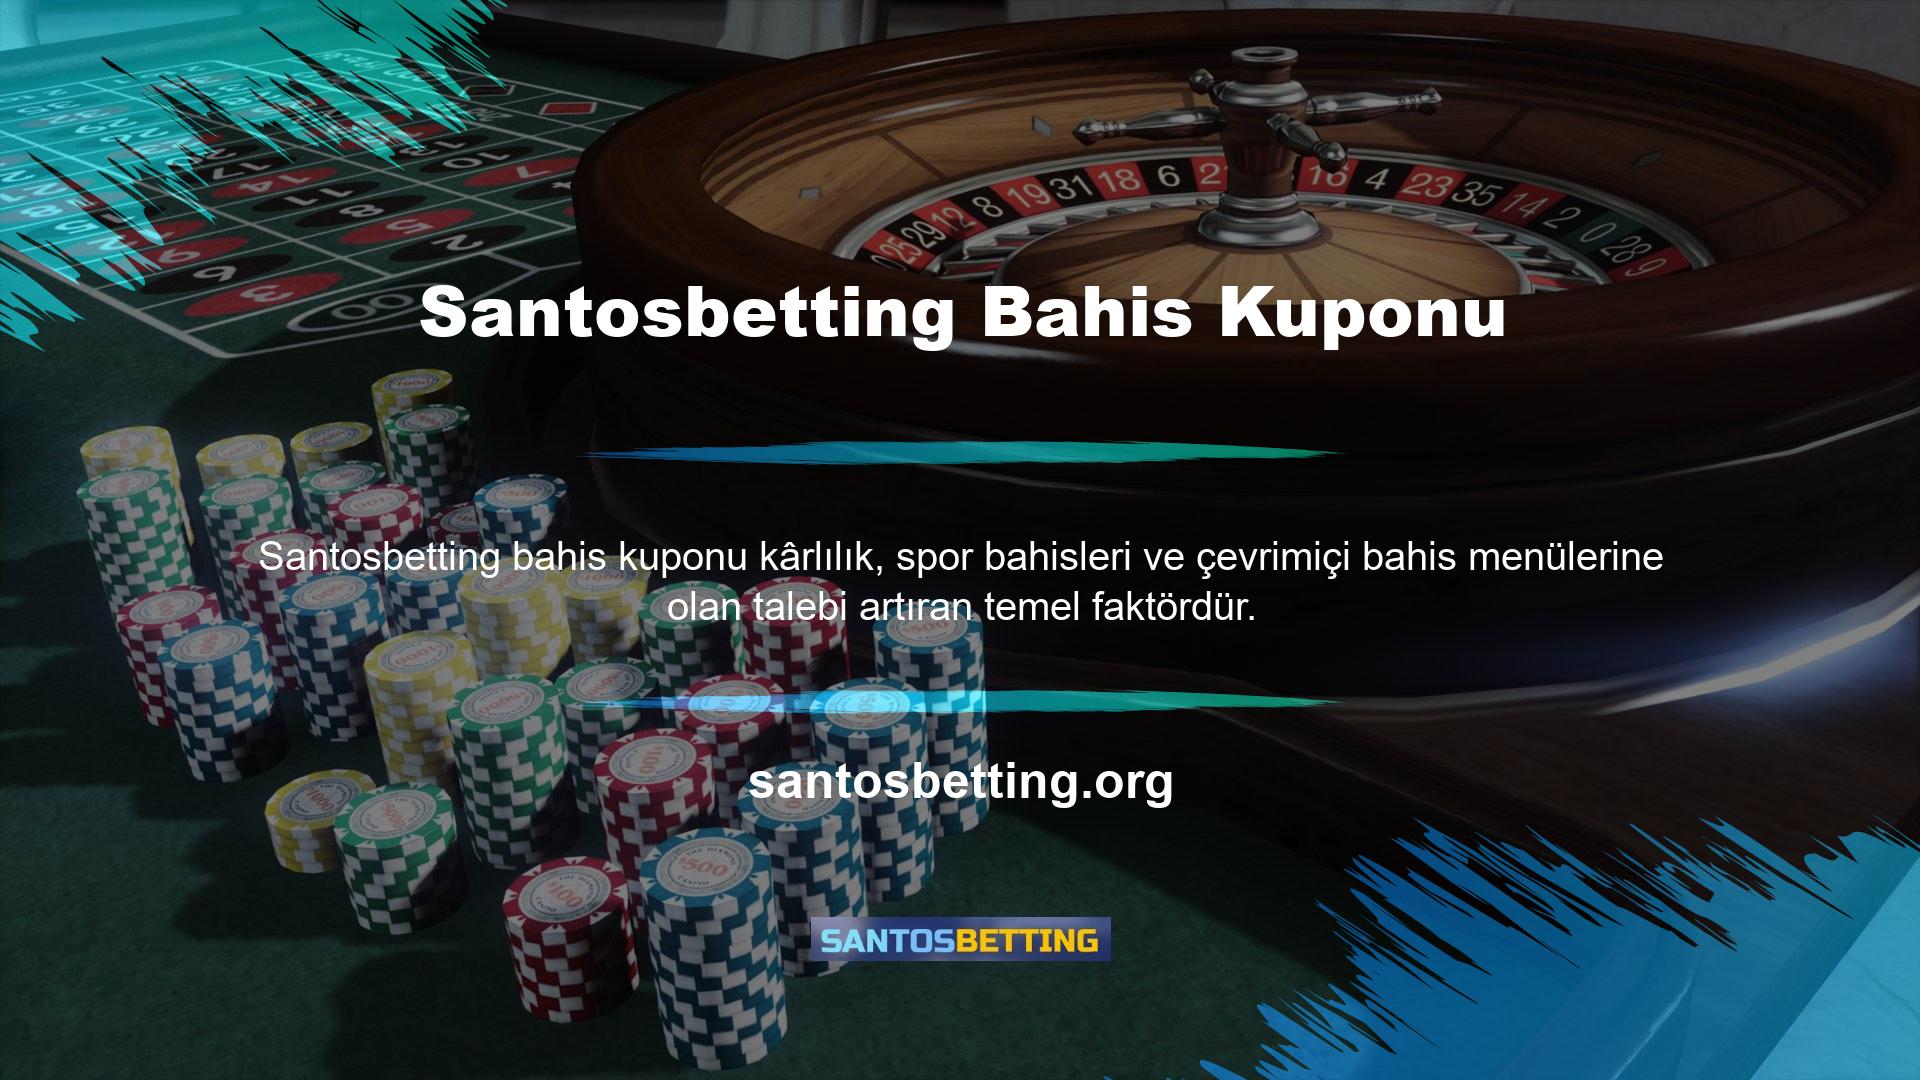 Santosbetting, bahis kuponu tutarlarını hesaplarken dünya çapında istikrarlı çözümler sunmayı amaçlıyor